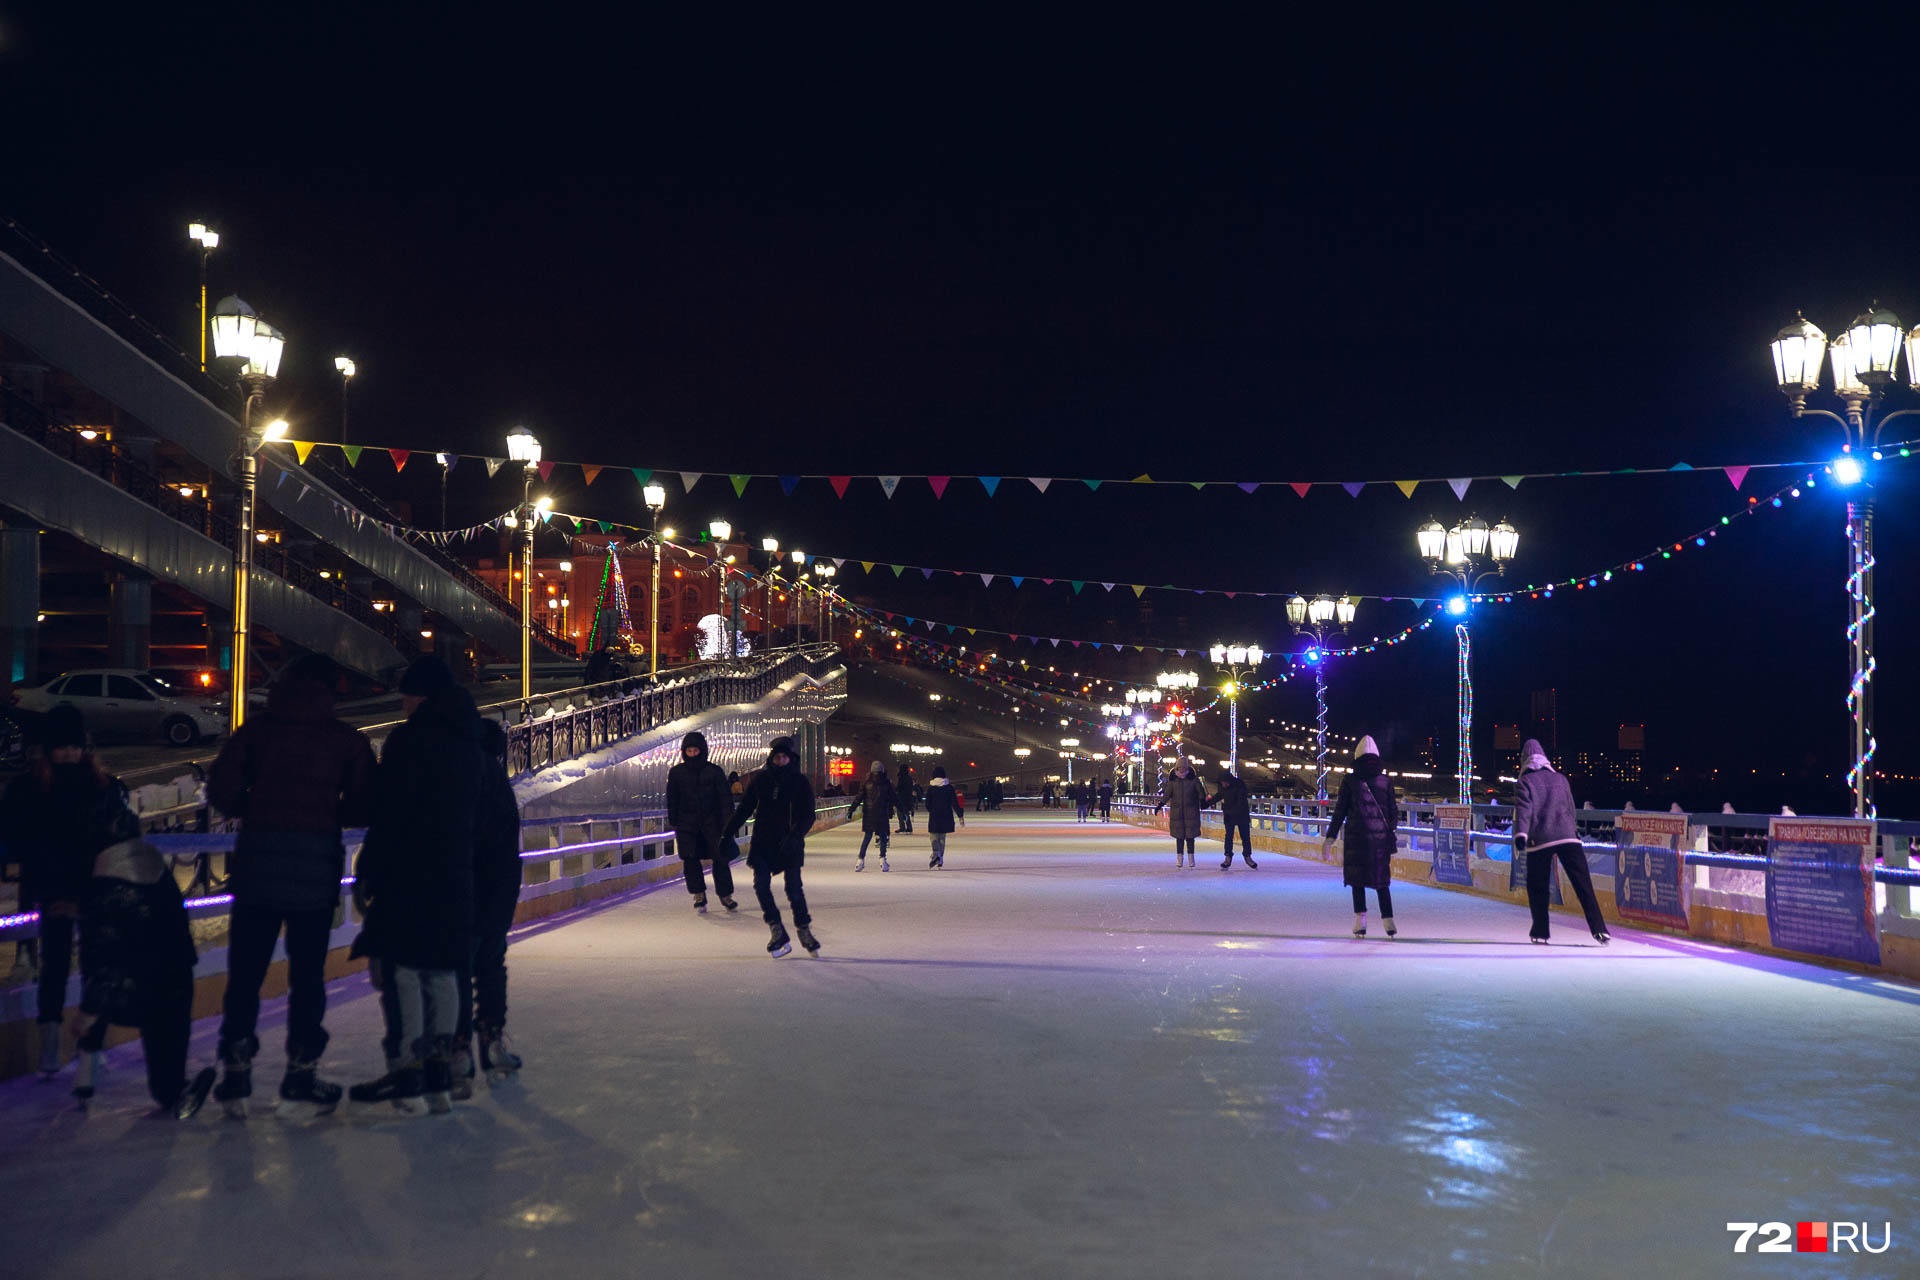 Здесь можно совместить полезное и красивое — порассекать лед на коньках и полюбоваться красивейшим видом в нашем городе